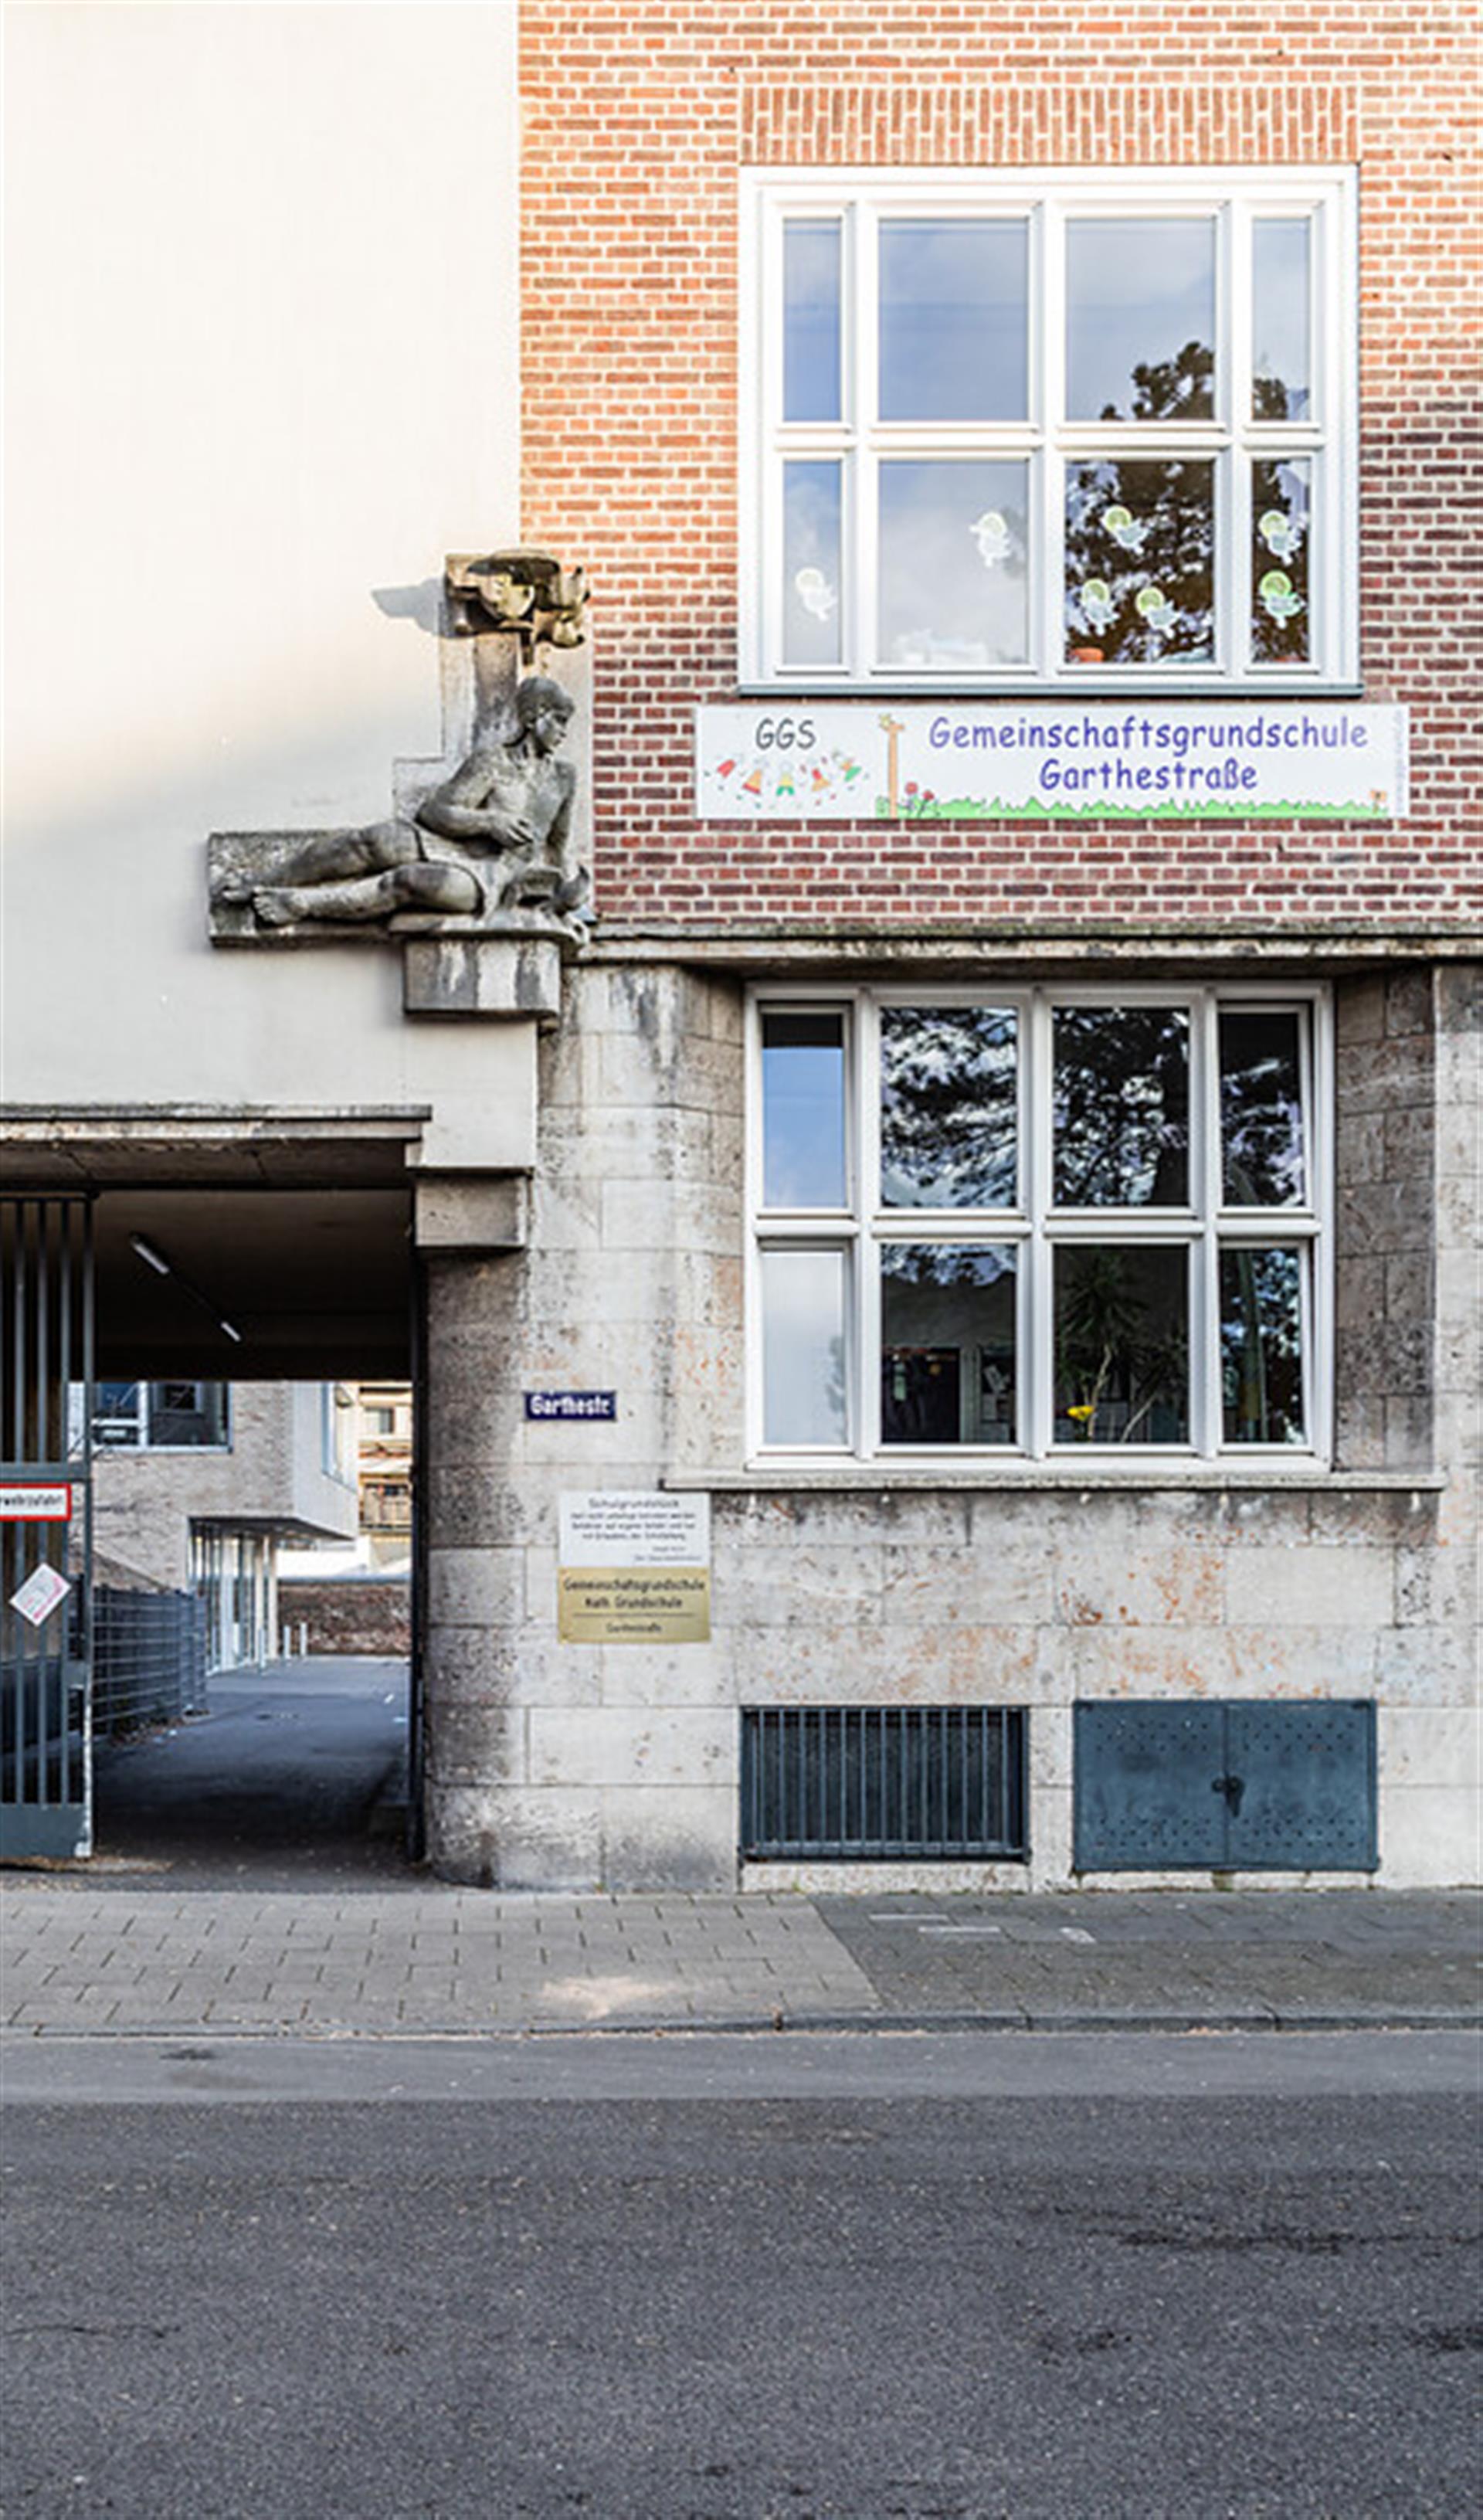 Gemeinschaftsgrundschule Garthestraße in Köln-Riehl (2022). Die Figur symbolisiert den Eingang für Mädchen der ehemaligen Volksschule, die sich in dem Gebäude befand. &copy; Sebastian Löder / CC-BY 4.0